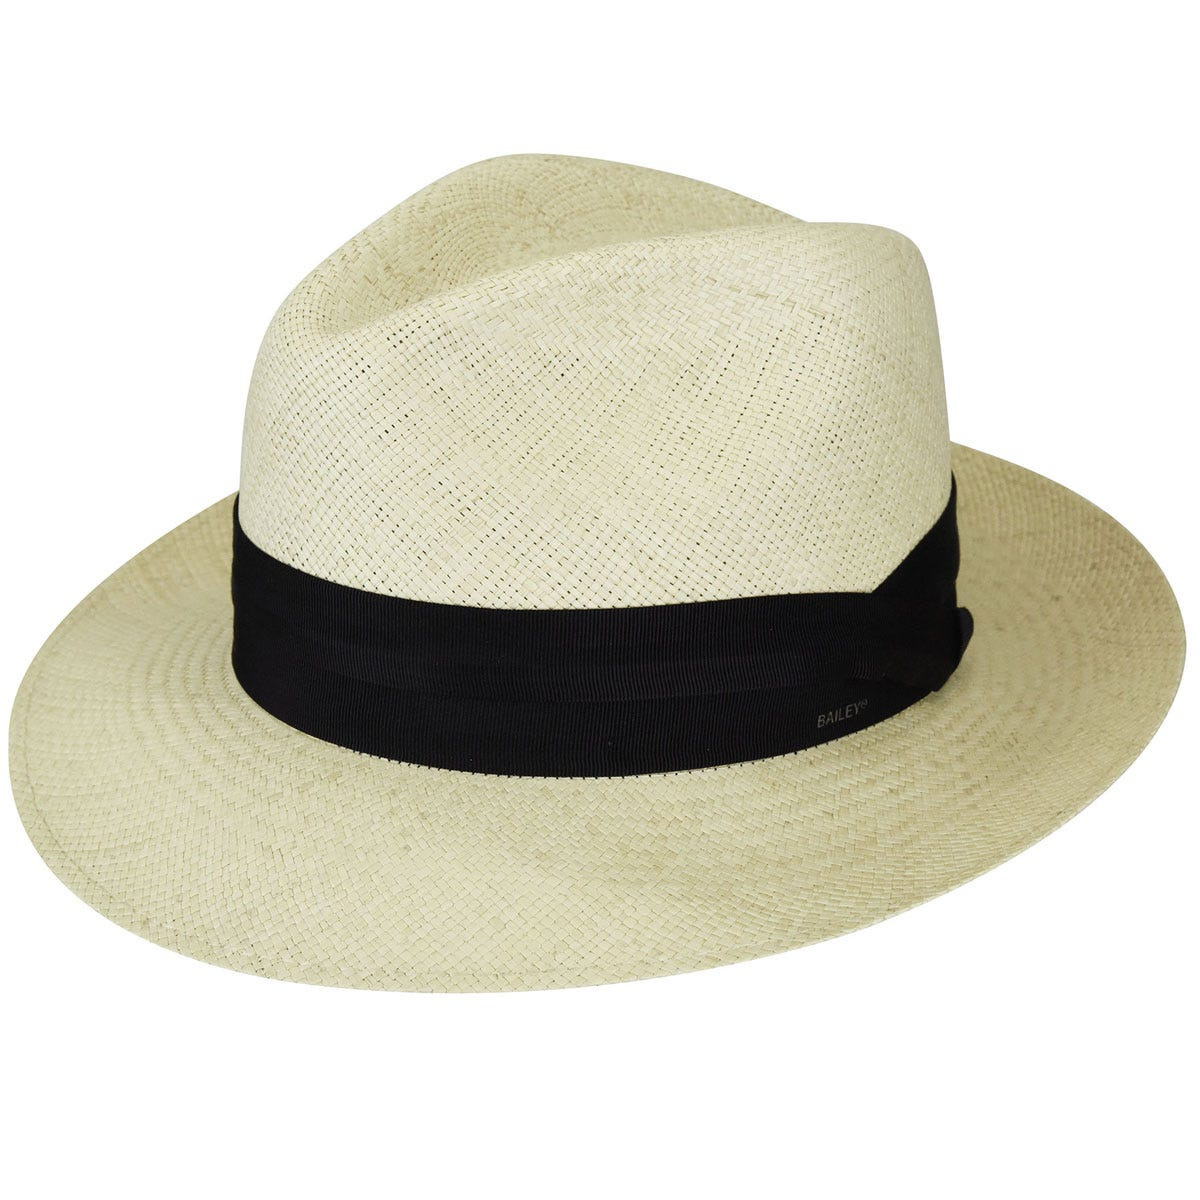 Natural Cuban Panama Hat - Bailey Reference : 10289